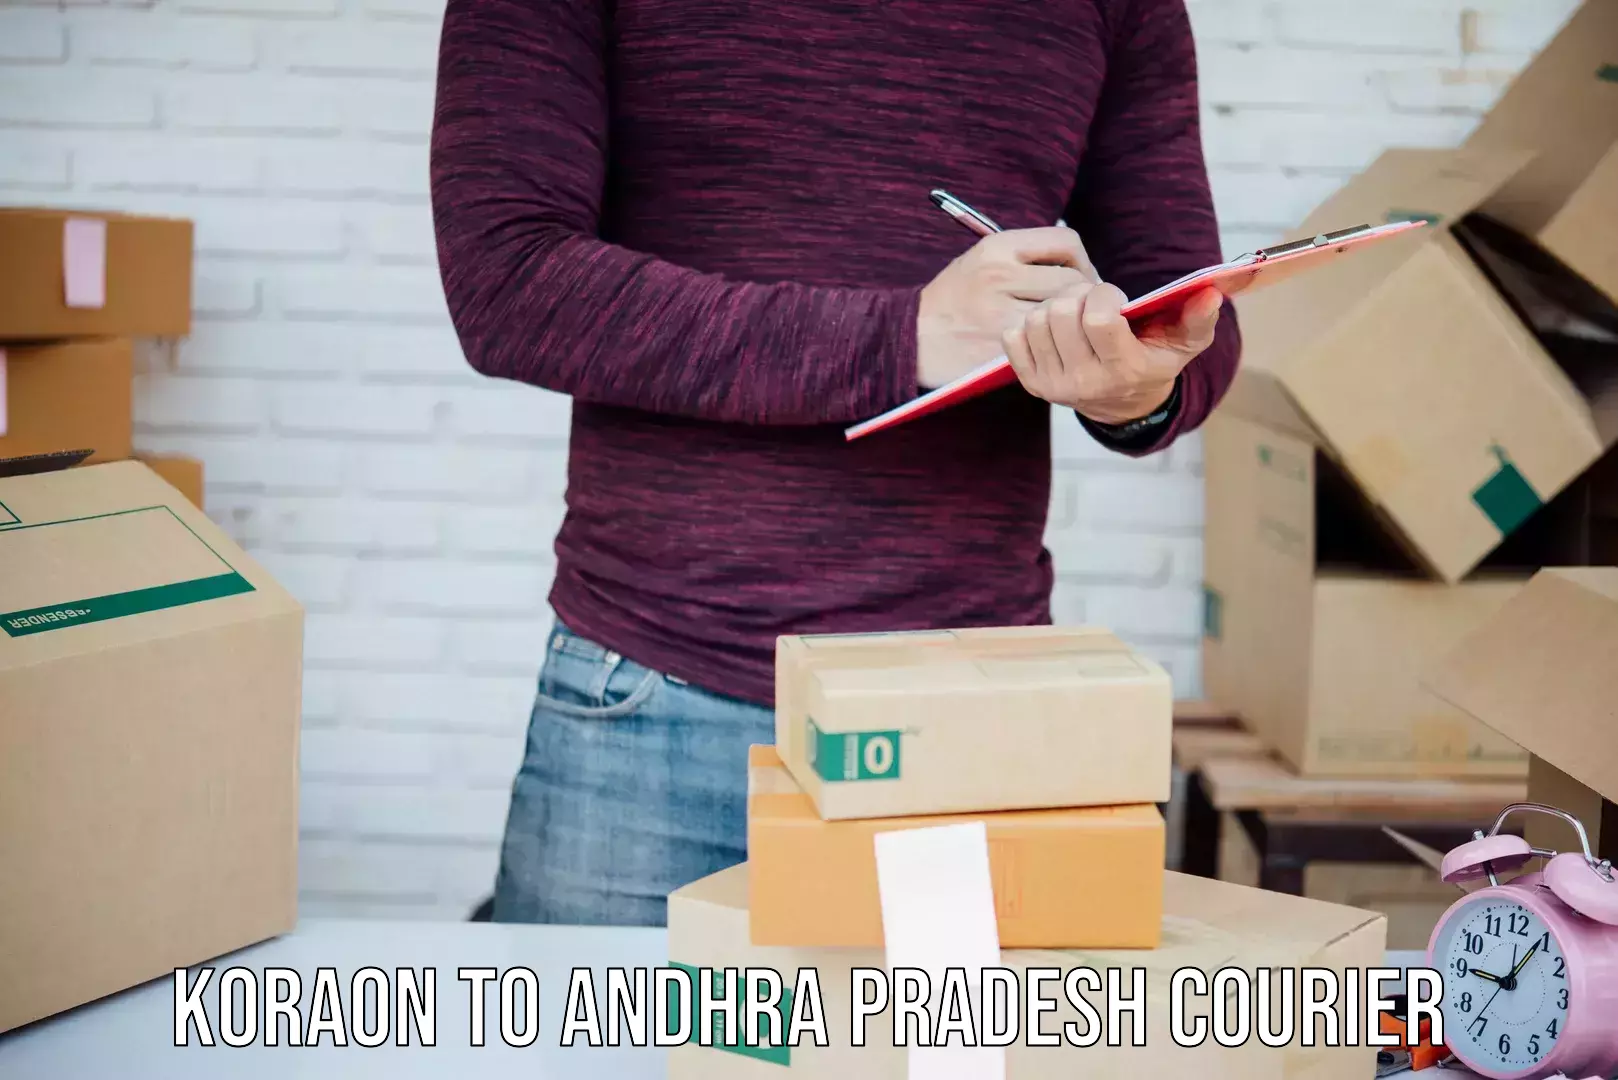 Multi-service courier options Koraon to Andhra Pradesh